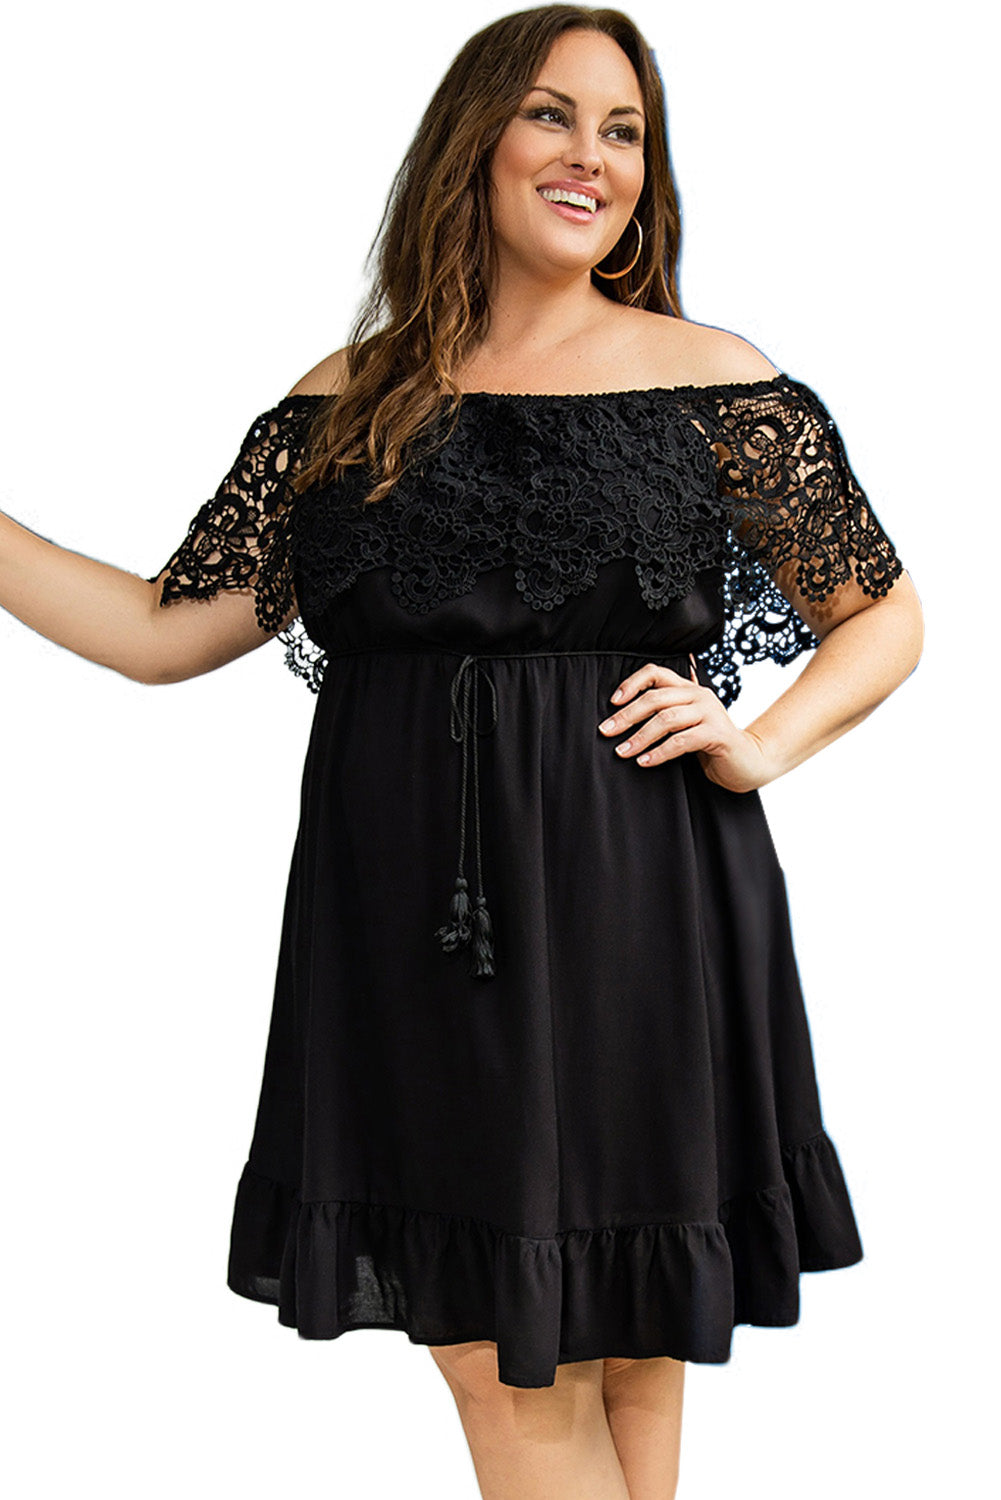 Black Off-the-shoulder Lace Sleeves Plus size Dress Plus Size Dresses JT's Designer Fashion